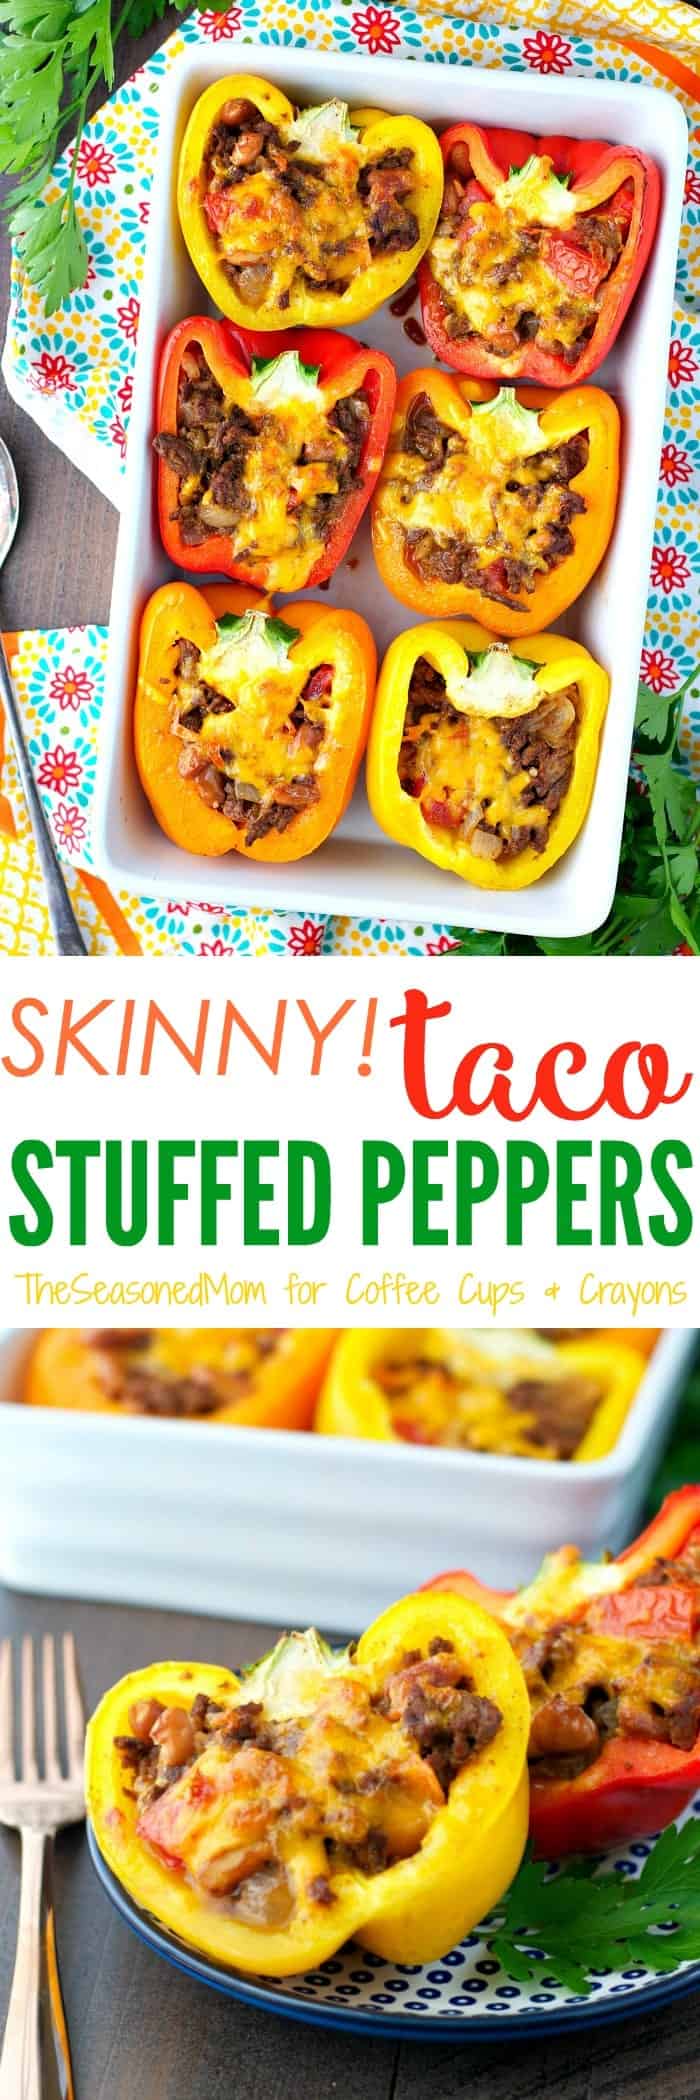 Skinny Taco Stuffed Peppers